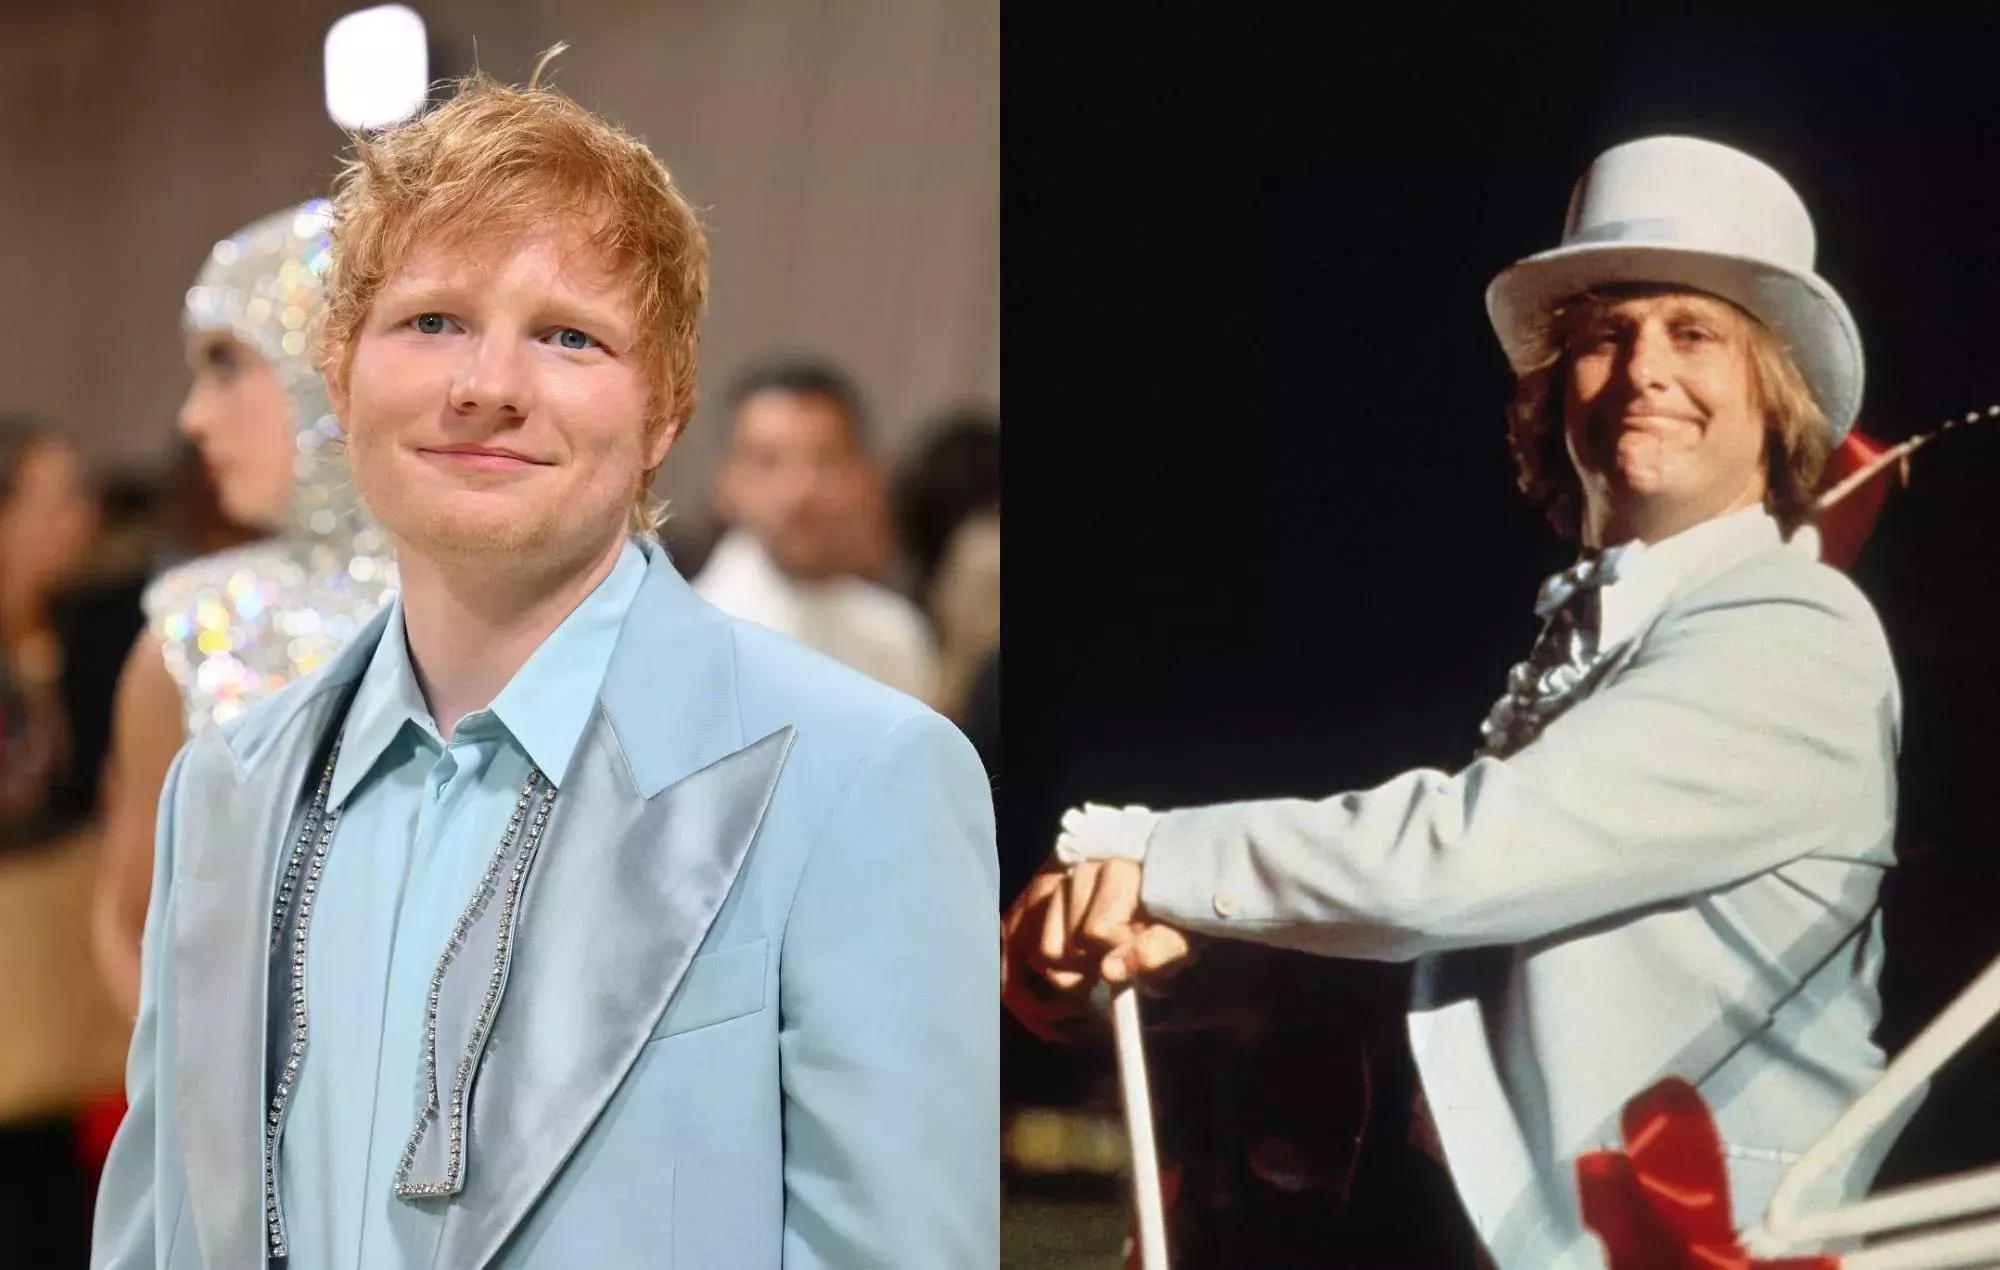 Los fans comparan el traje de Ed Sheeran en la Gala del Met con el look de 'Dumb & Dumber' y 'High School Musical'